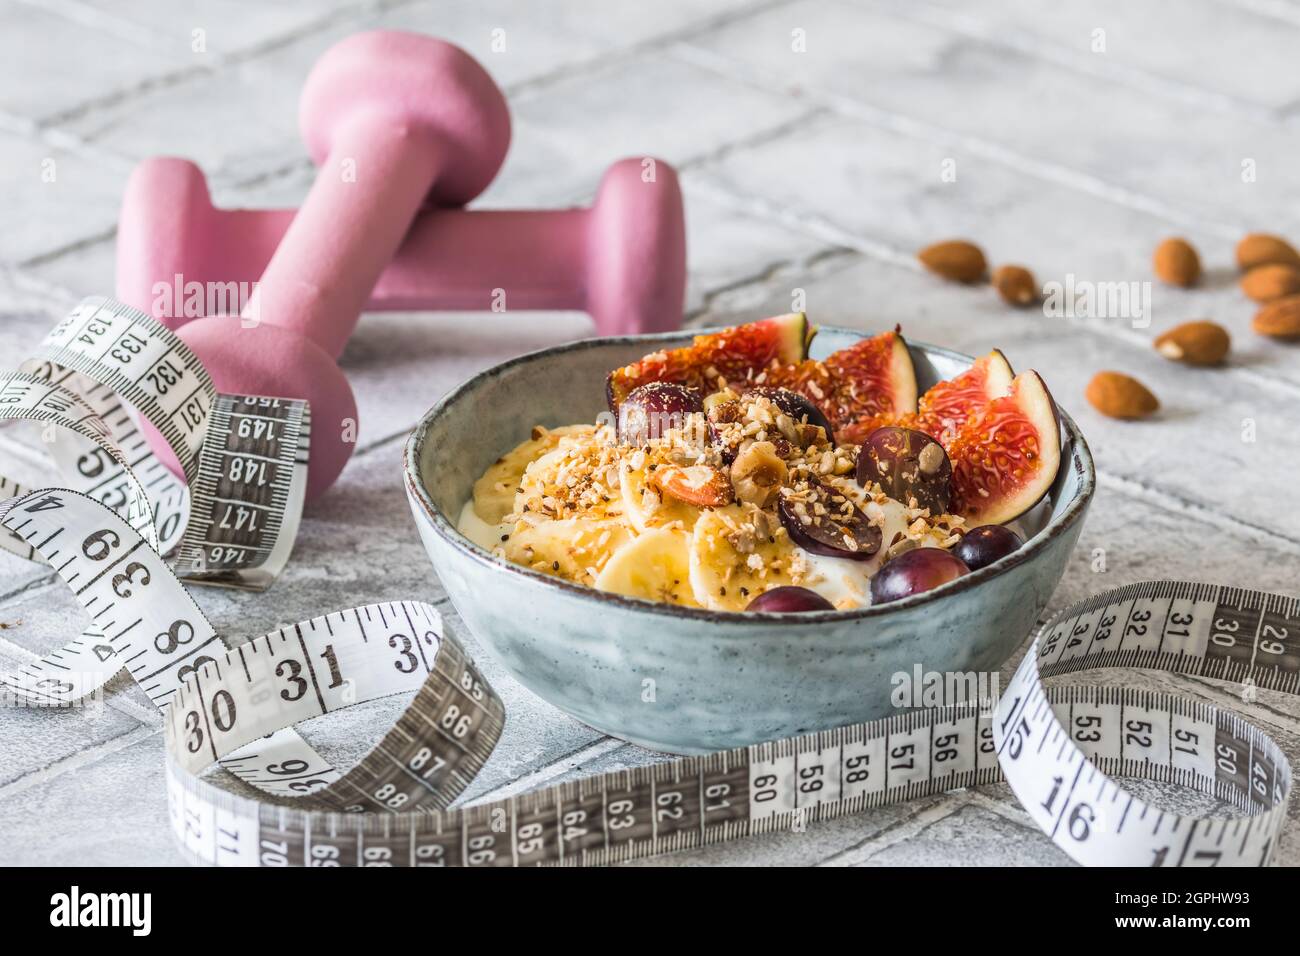 Schüssel mit Joghurt, Obst und Nüssen für eine gesunde Ernährung Frühstück oder Snack. Rosa Kurzhanteln und ein Maßband auf grauem Hintergrund, Gewichtsverlust Konzept Stockfoto